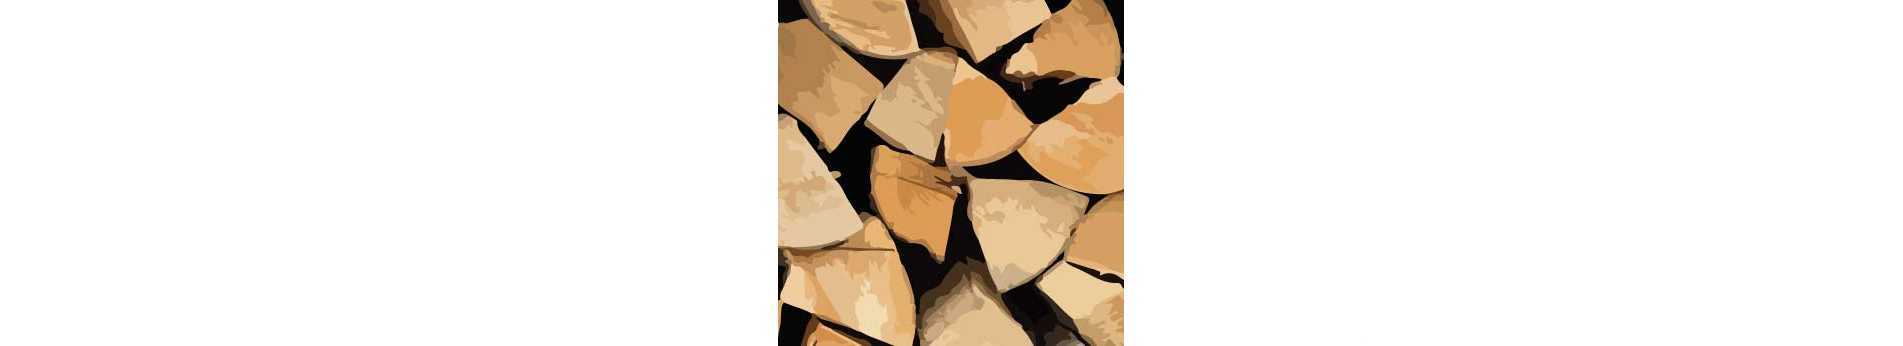 Tala, corte y astillado de la madera